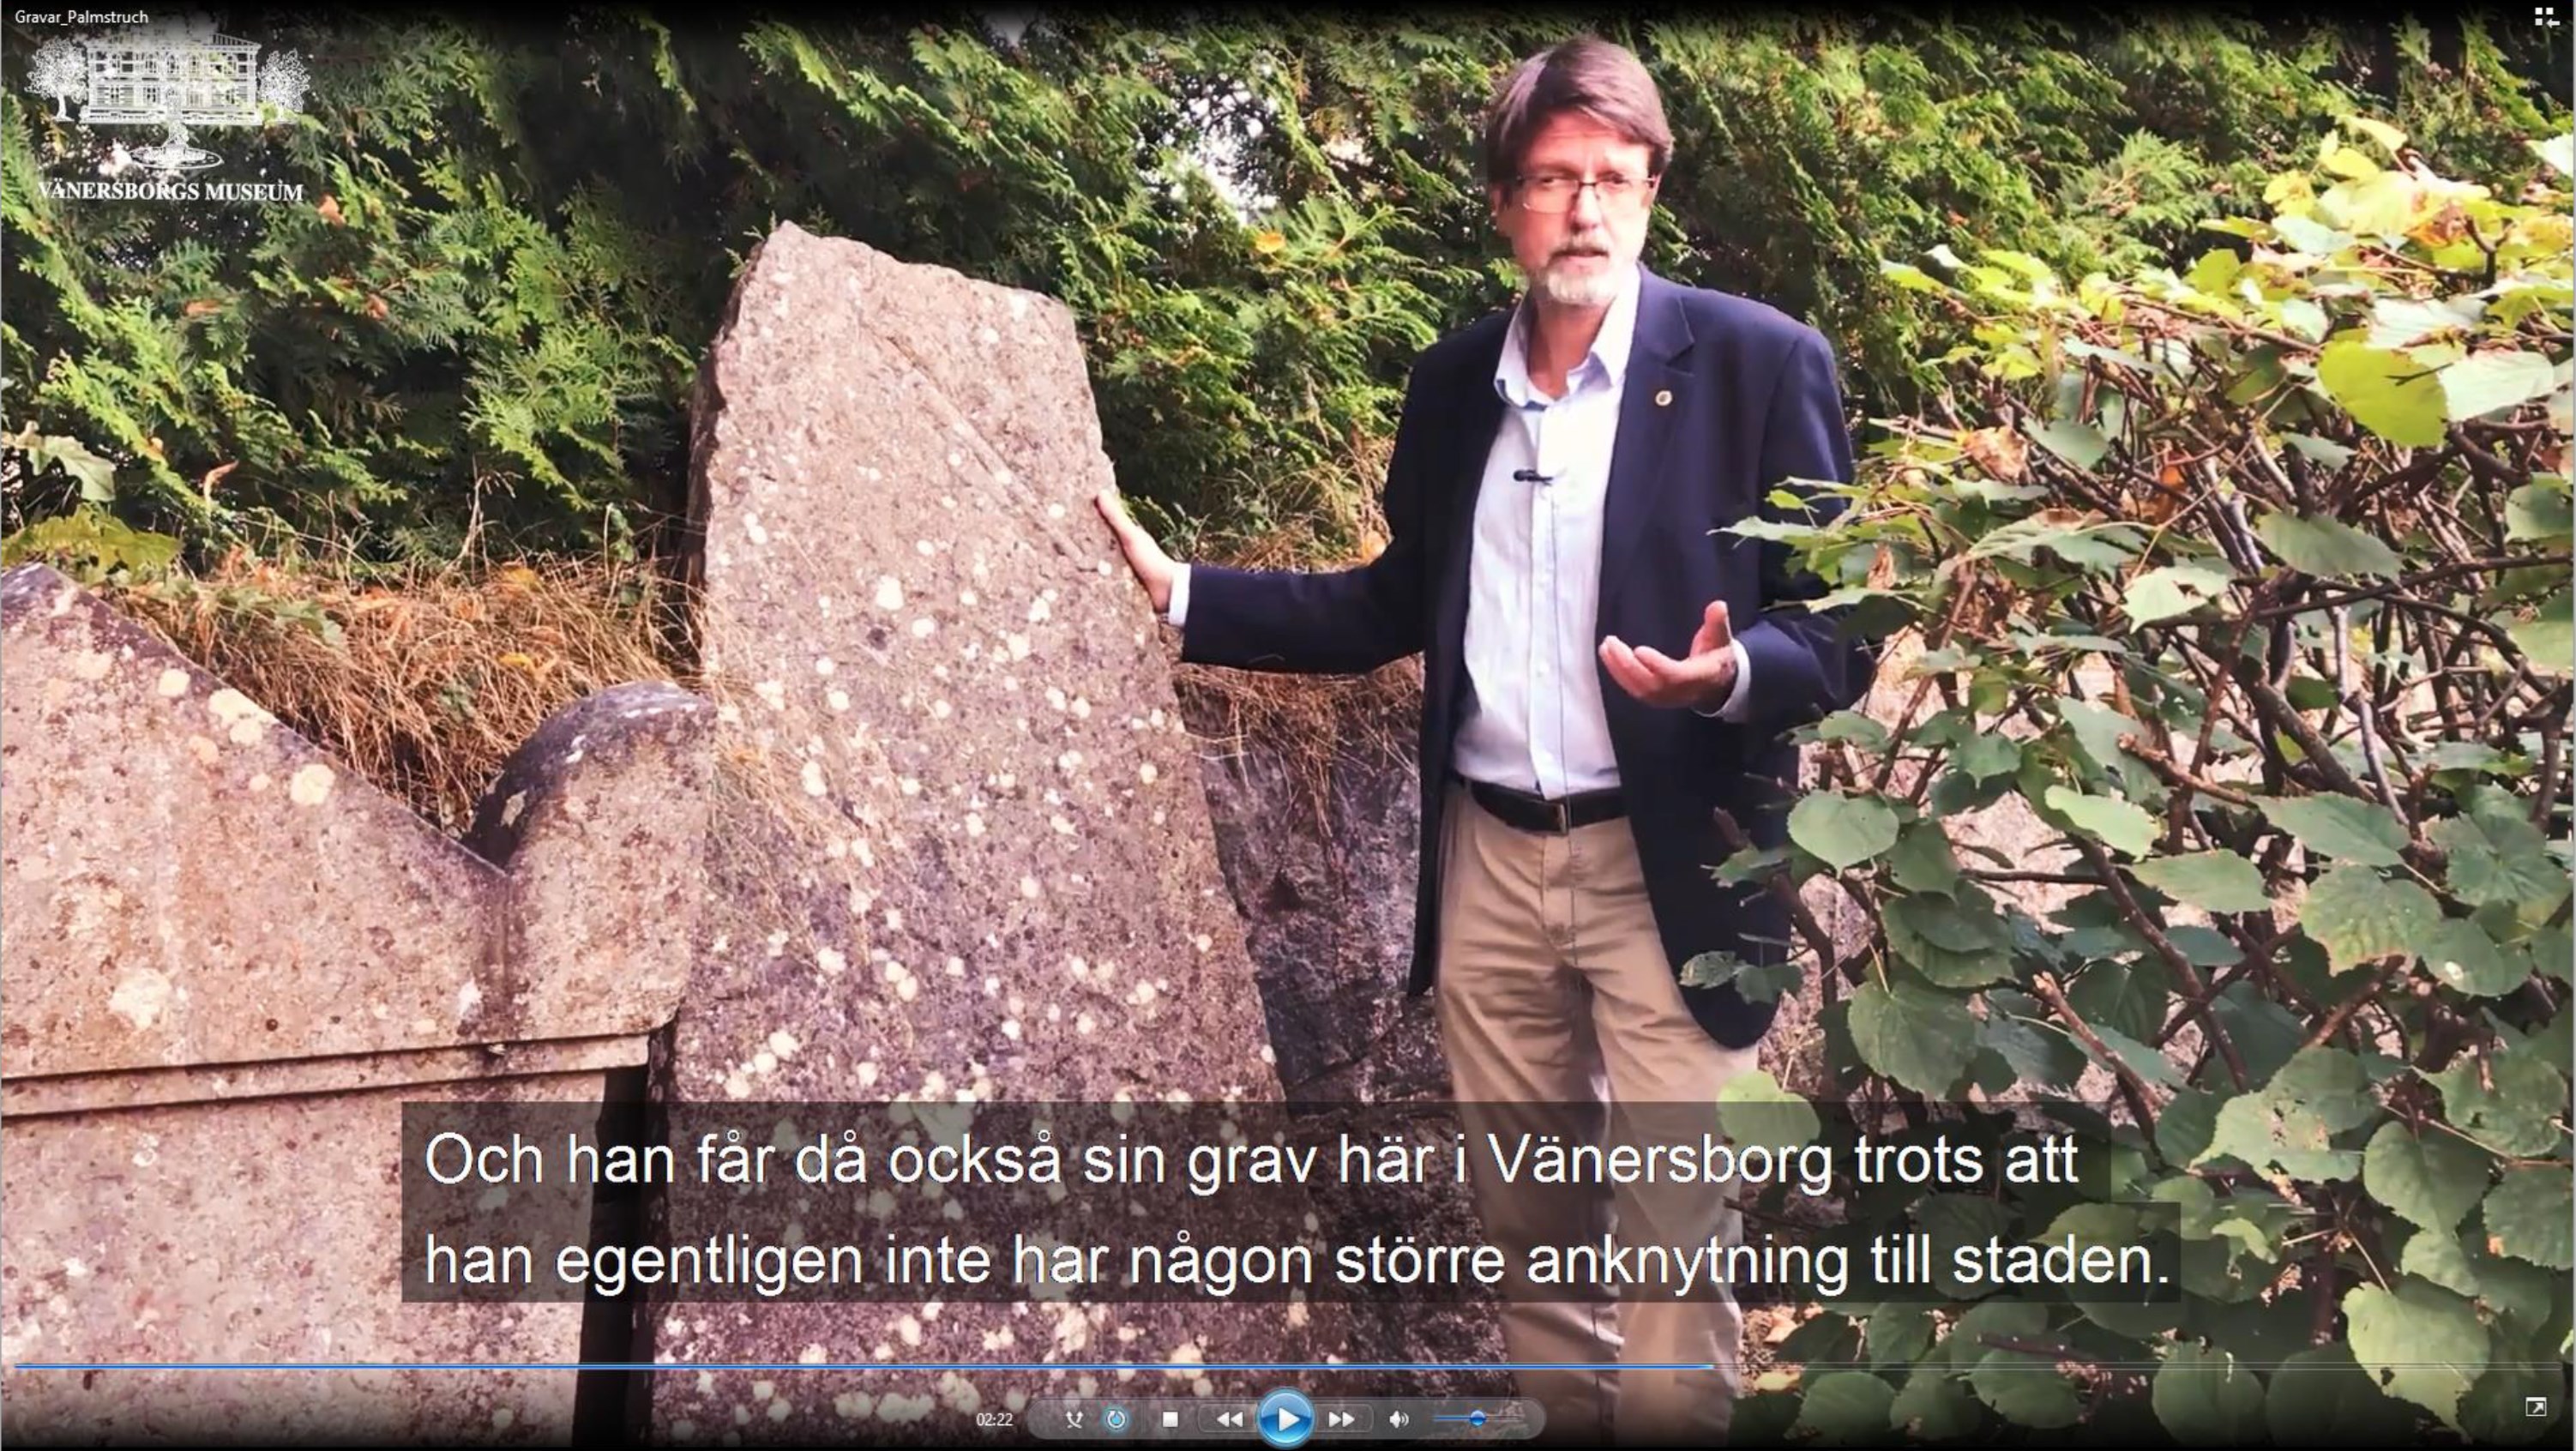 Peter johansson visar Palmstruch grav